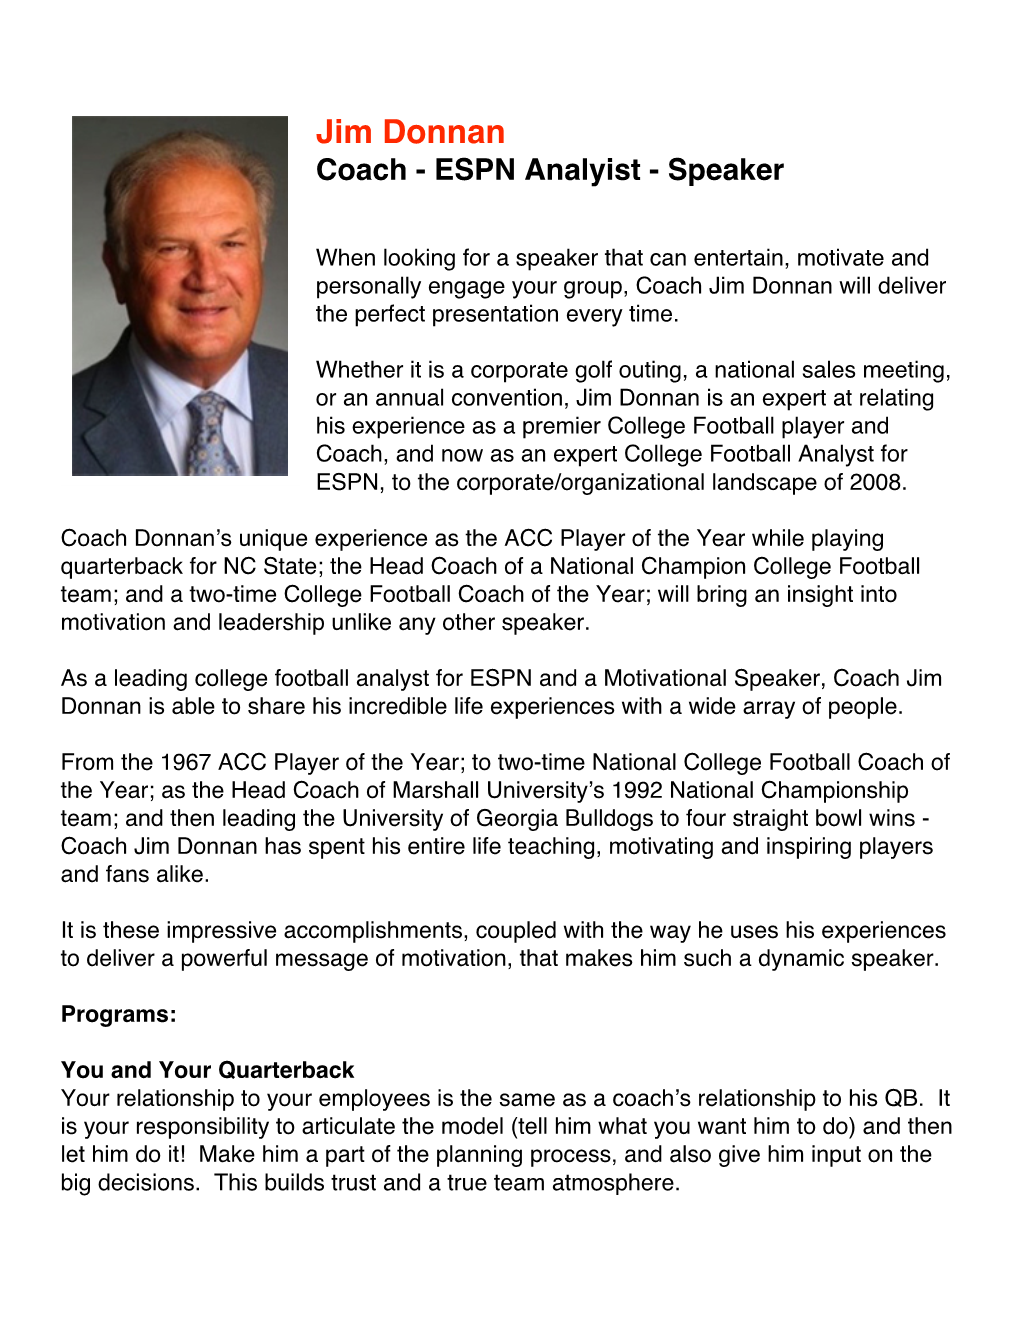 Jim Donnan Coach - ESPN Analyist - Speaker